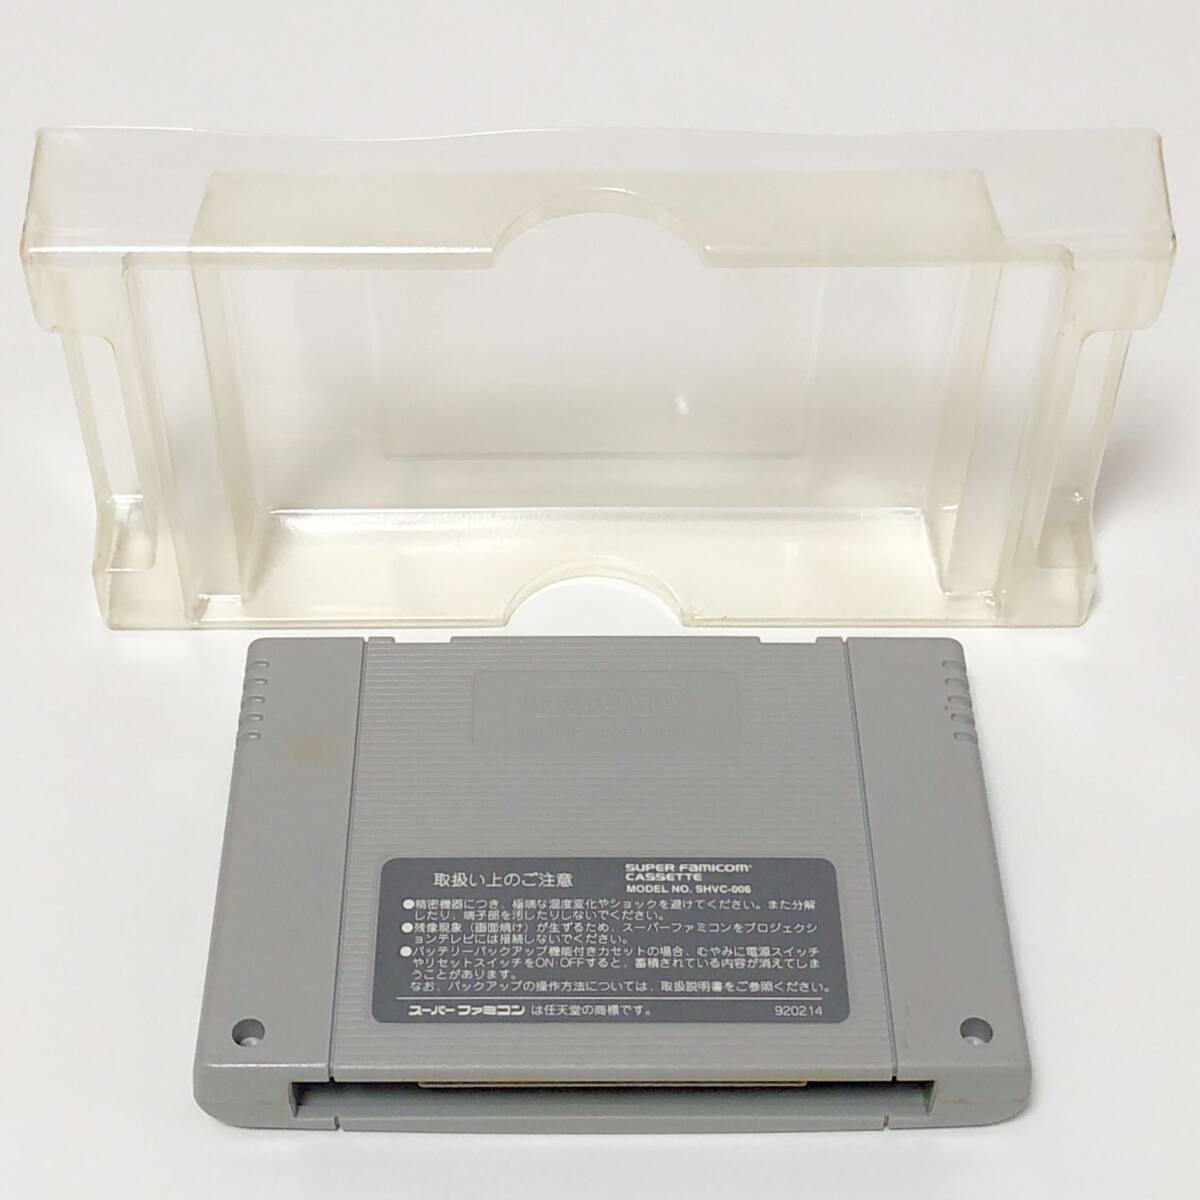 スーパーファミコン シムシティー 箱説付き 痛みあり 操作説明カード有 任天堂 Nintendo Super Famicom SimCity CIB Tested_画像8